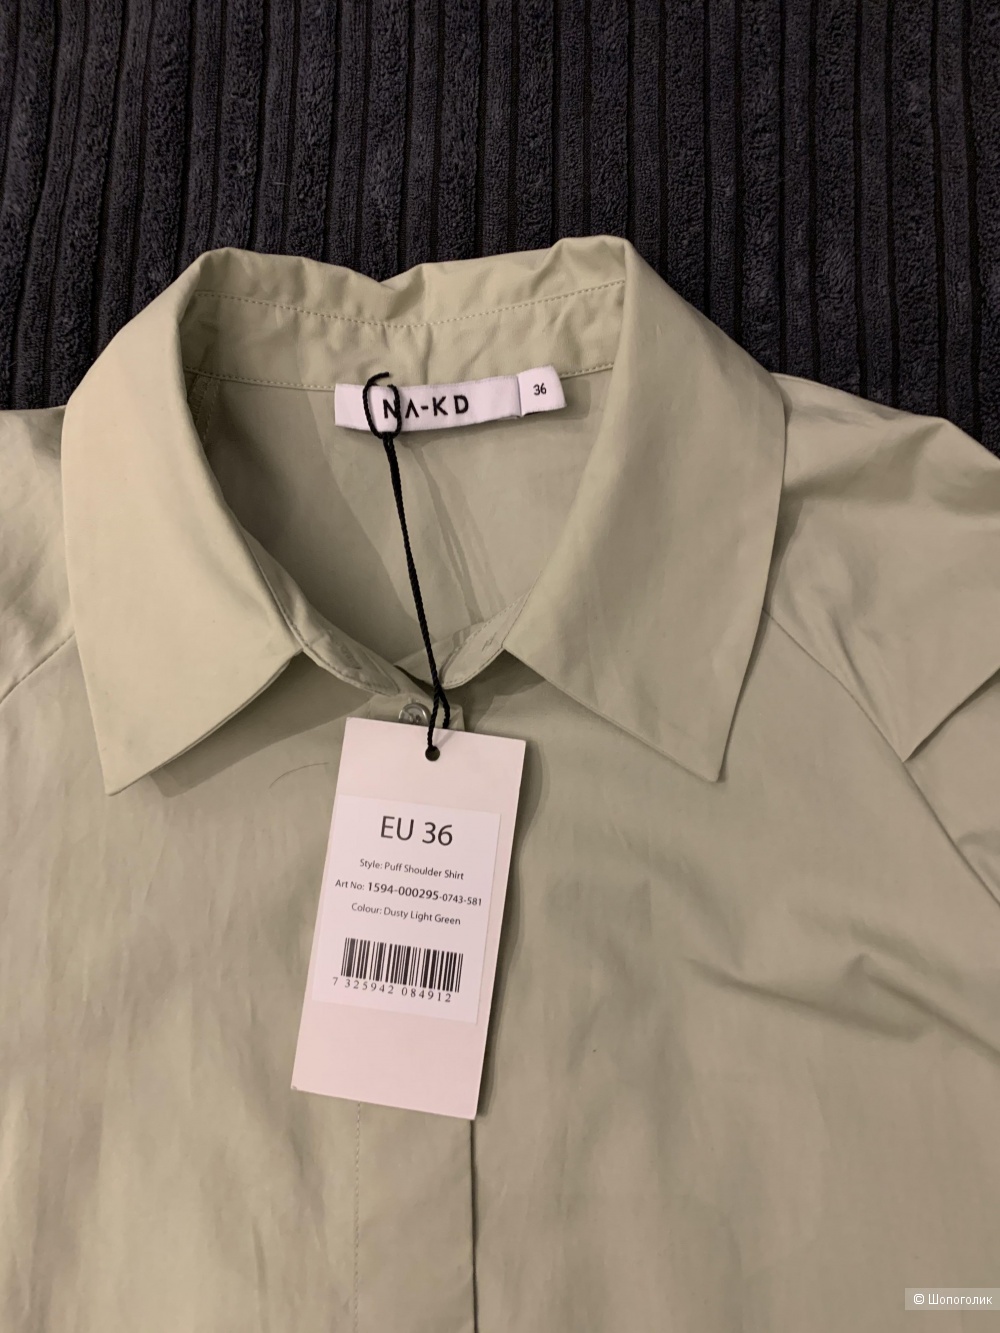 Рубашка-блузка NA-KD размер eu36 - рус 42/44